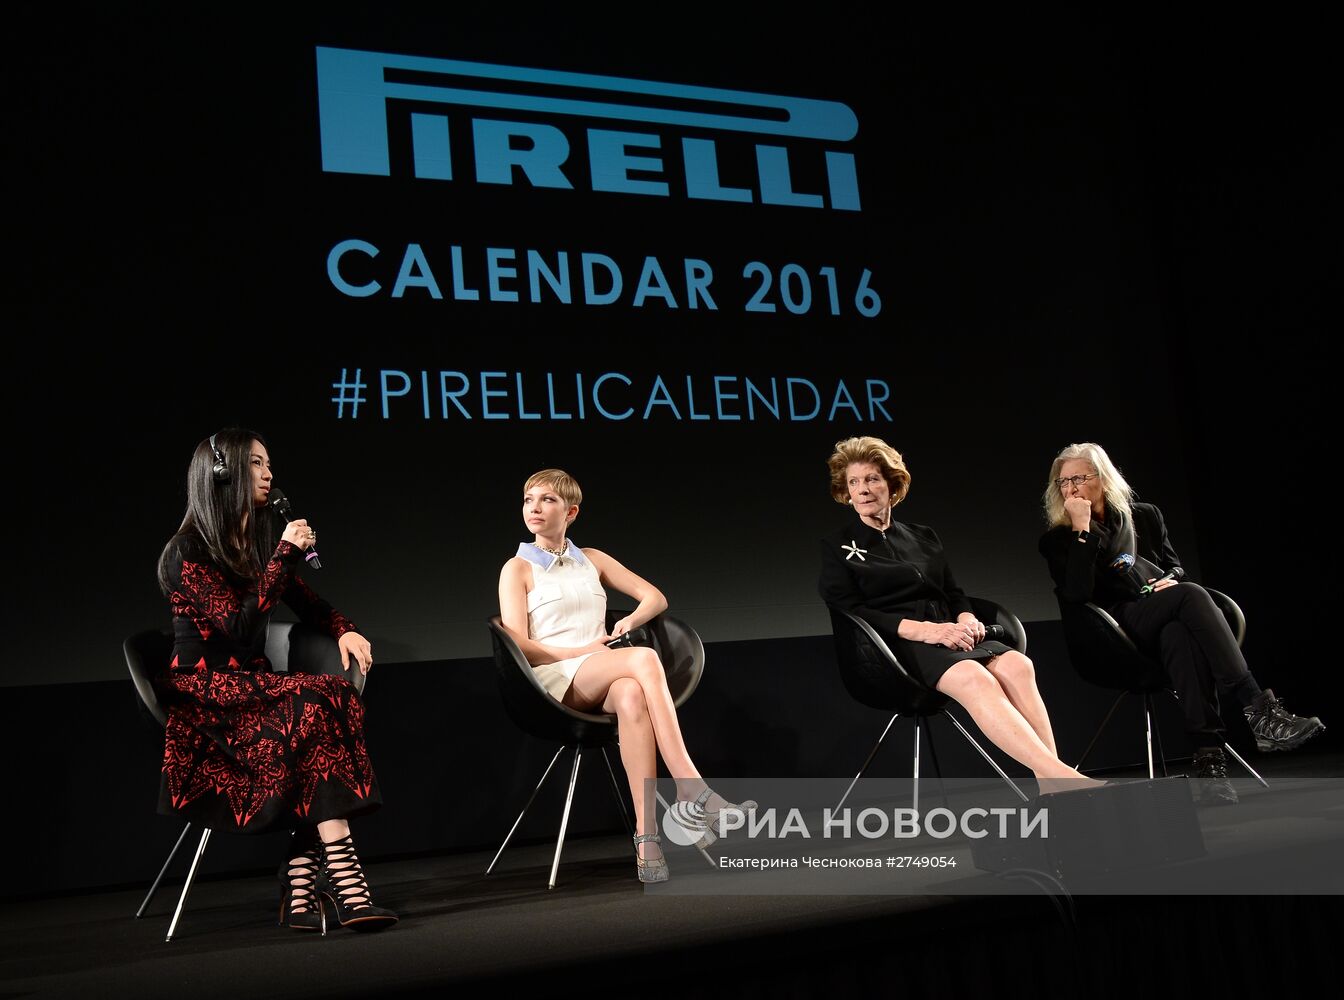 Презентация календаря Pirelli 2016